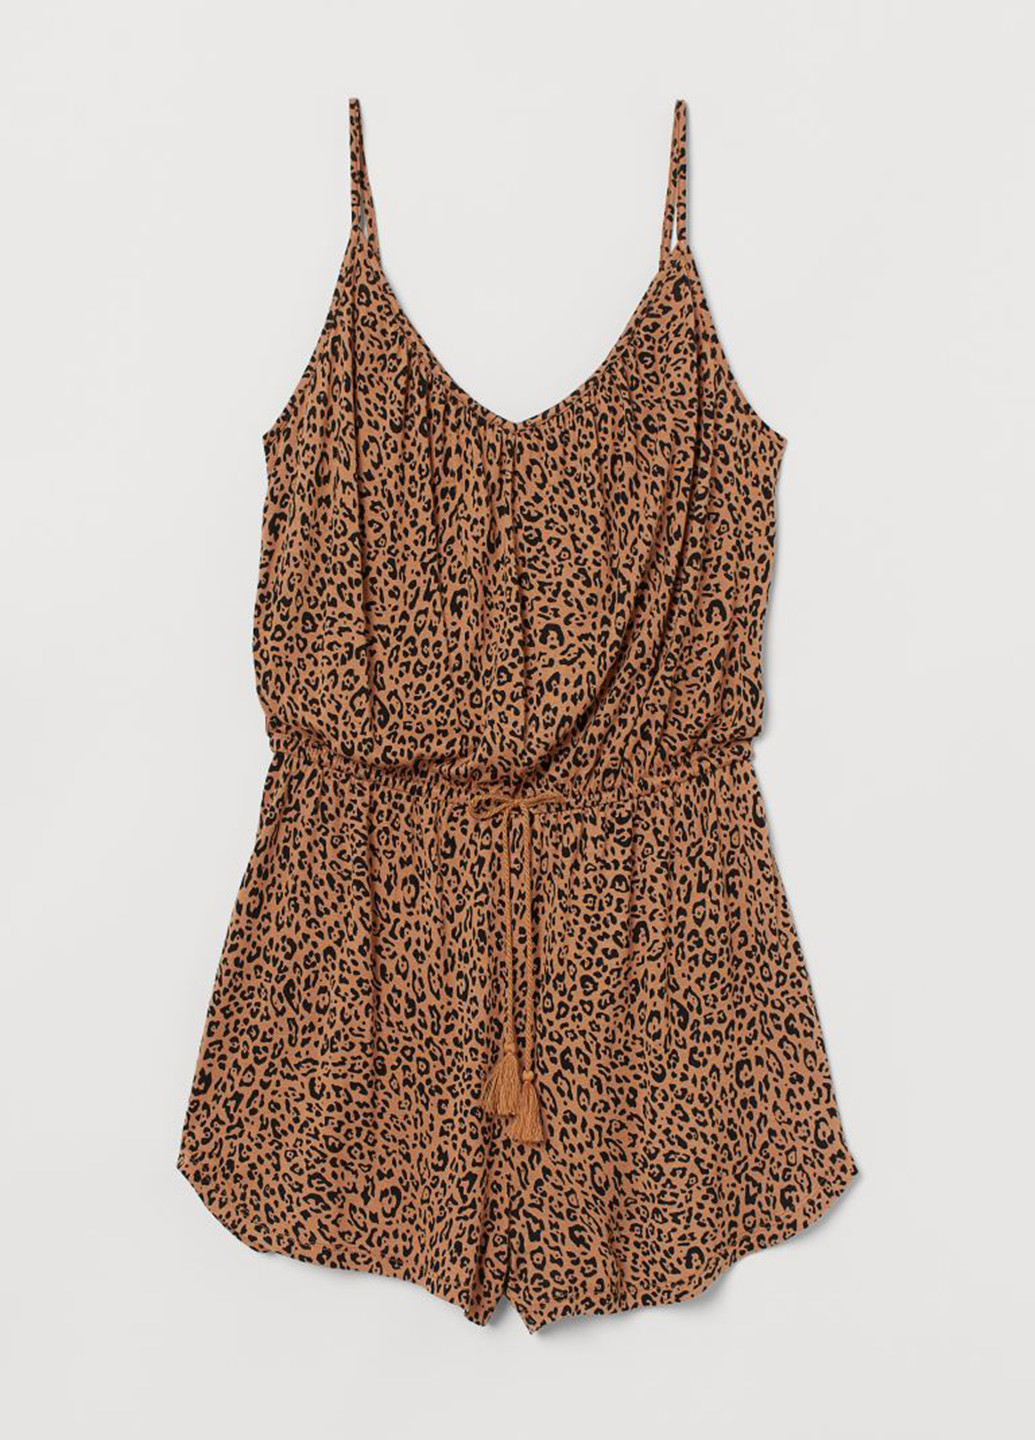 Комбинезон H&M комбинезон-шорты леопардовый светло-коричневый кэжуал вискоза, трикотаж